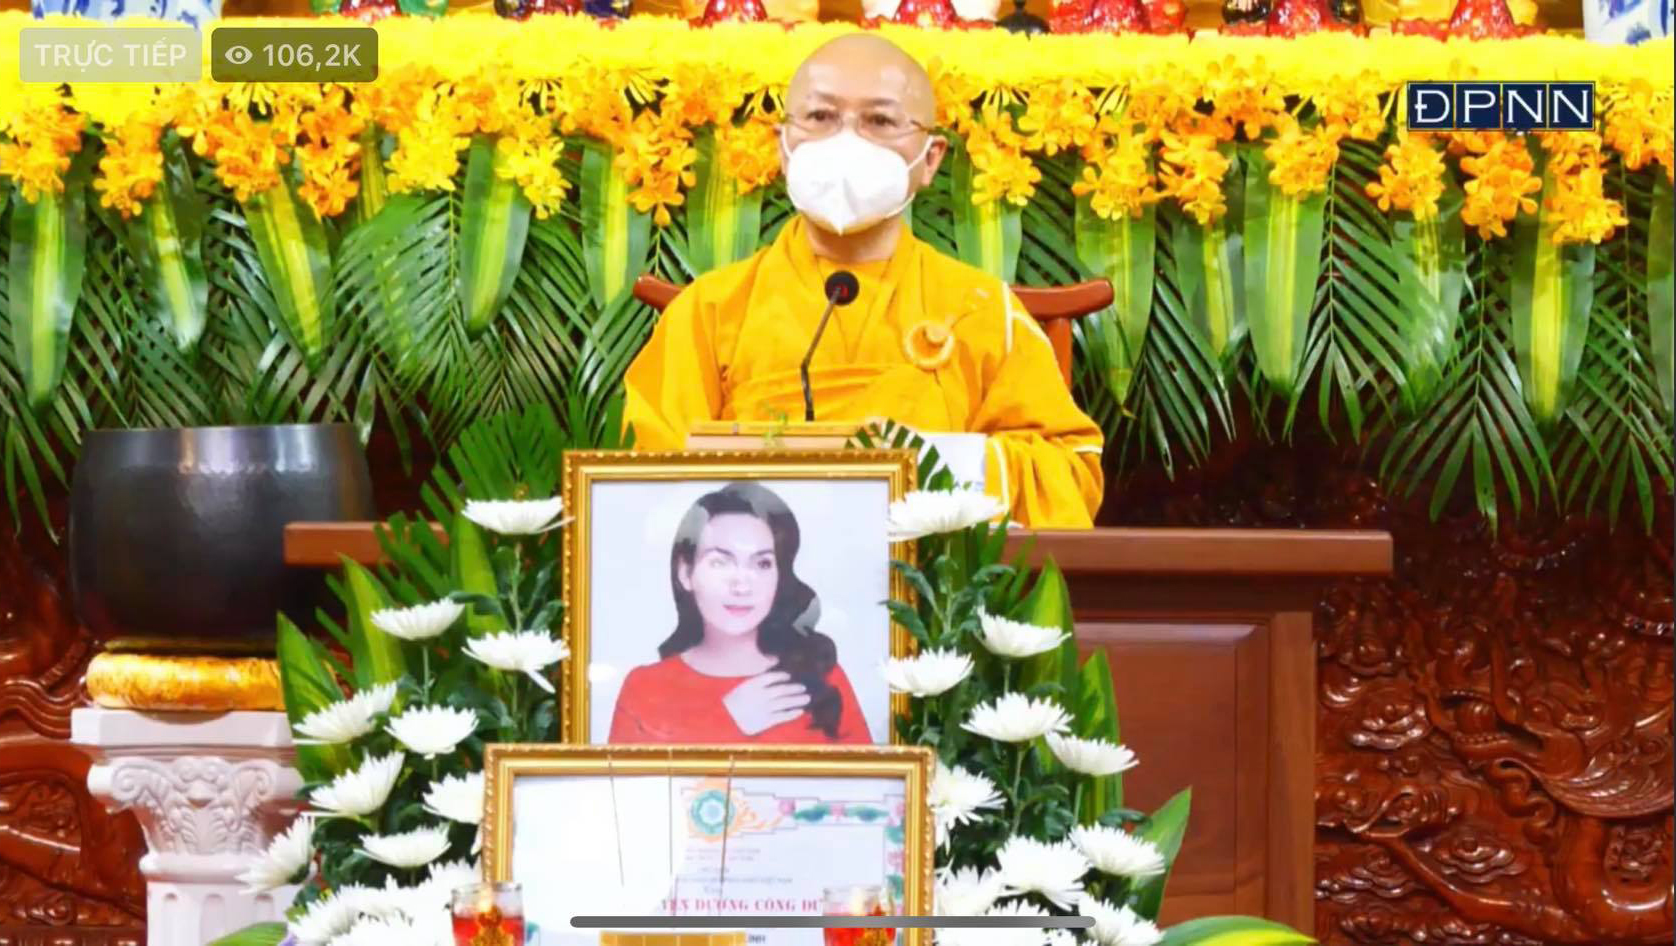 Xót xa di ảnh cố ca sĩ Phi Nhung trong lễ cầu siêu tại chùa Giác Ngộ - ảnh 1